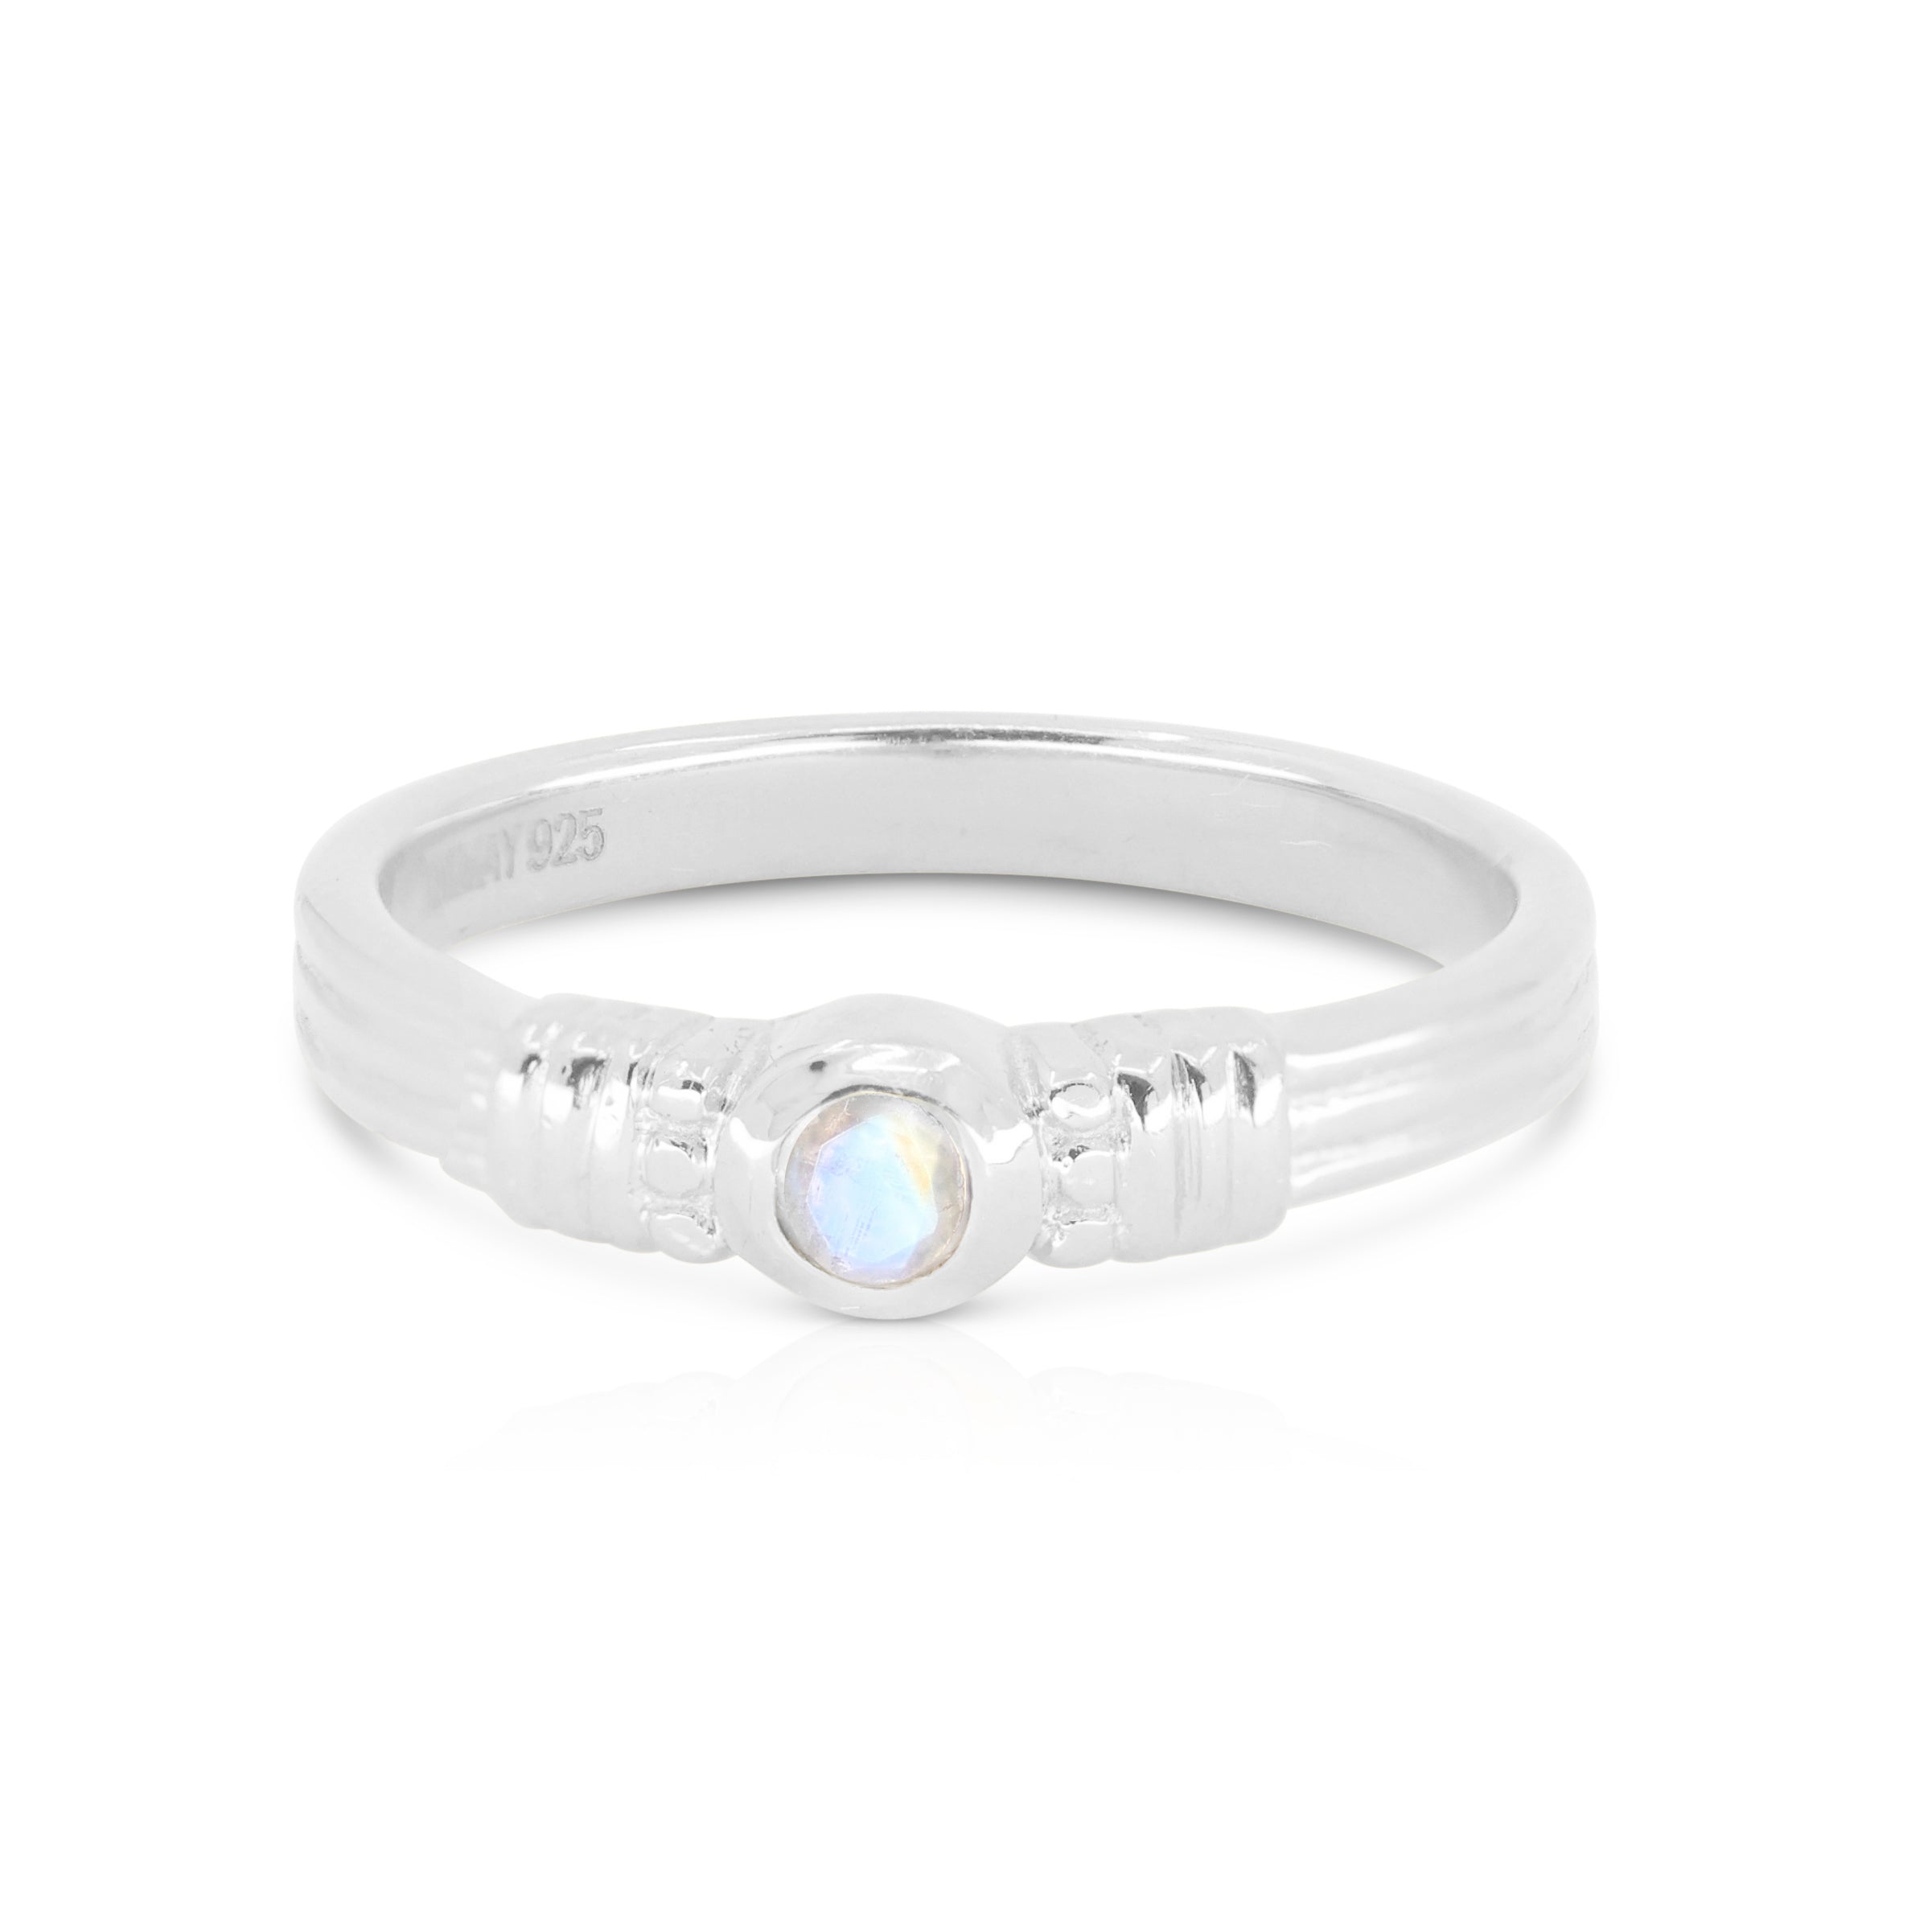 Rana Moonstone Silver Ring